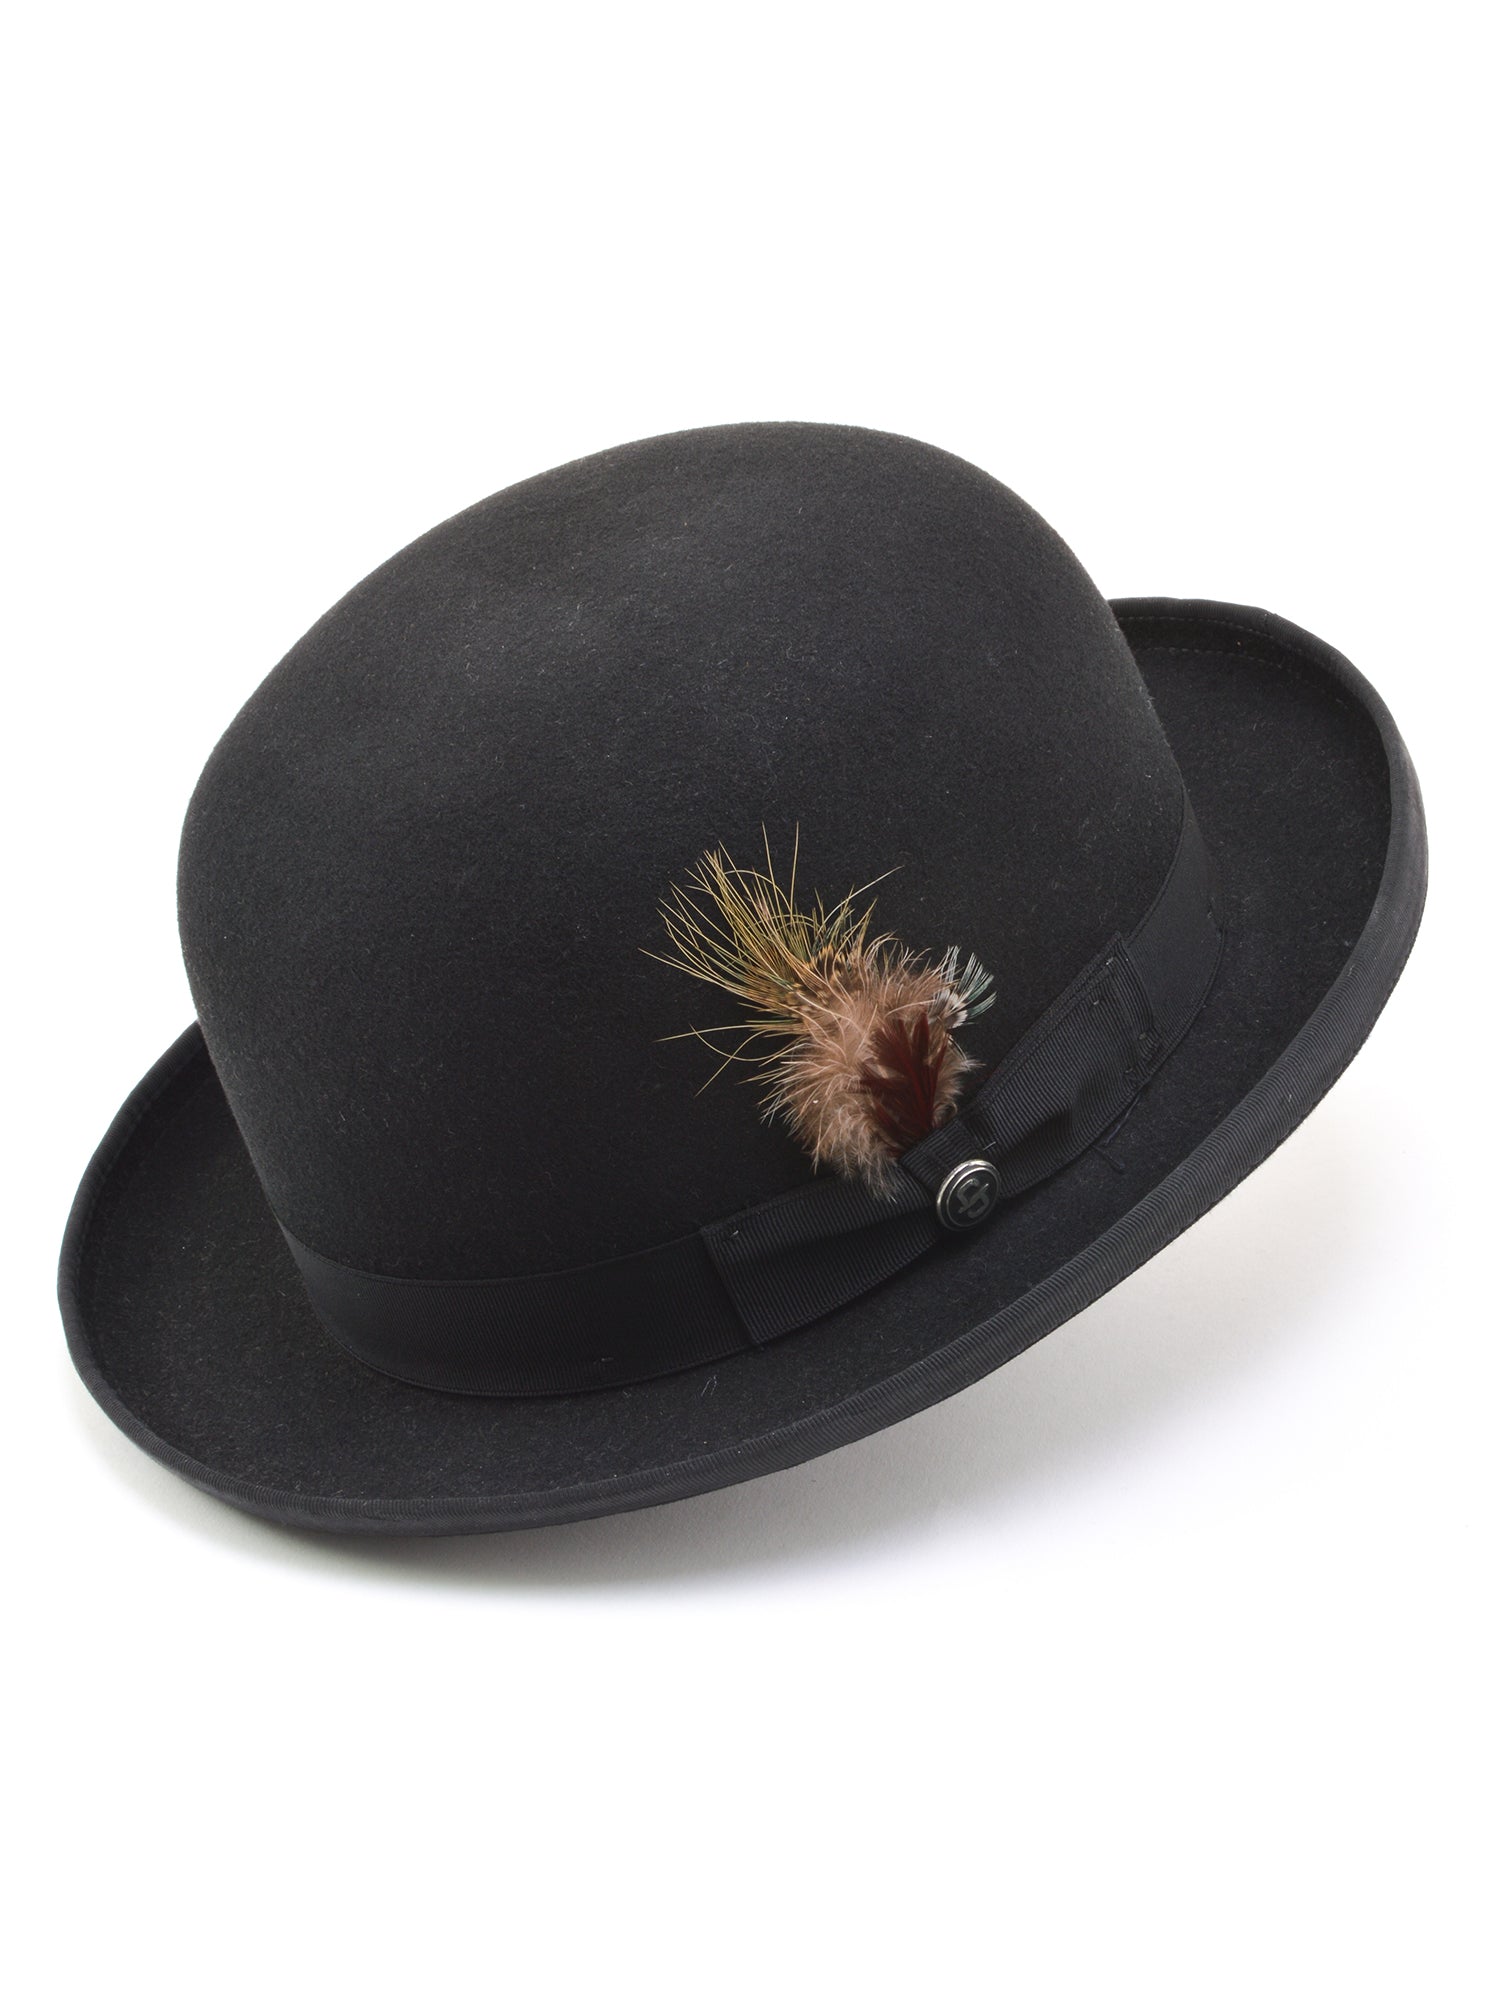 Stetson 100% Wool Felt Derby Hat